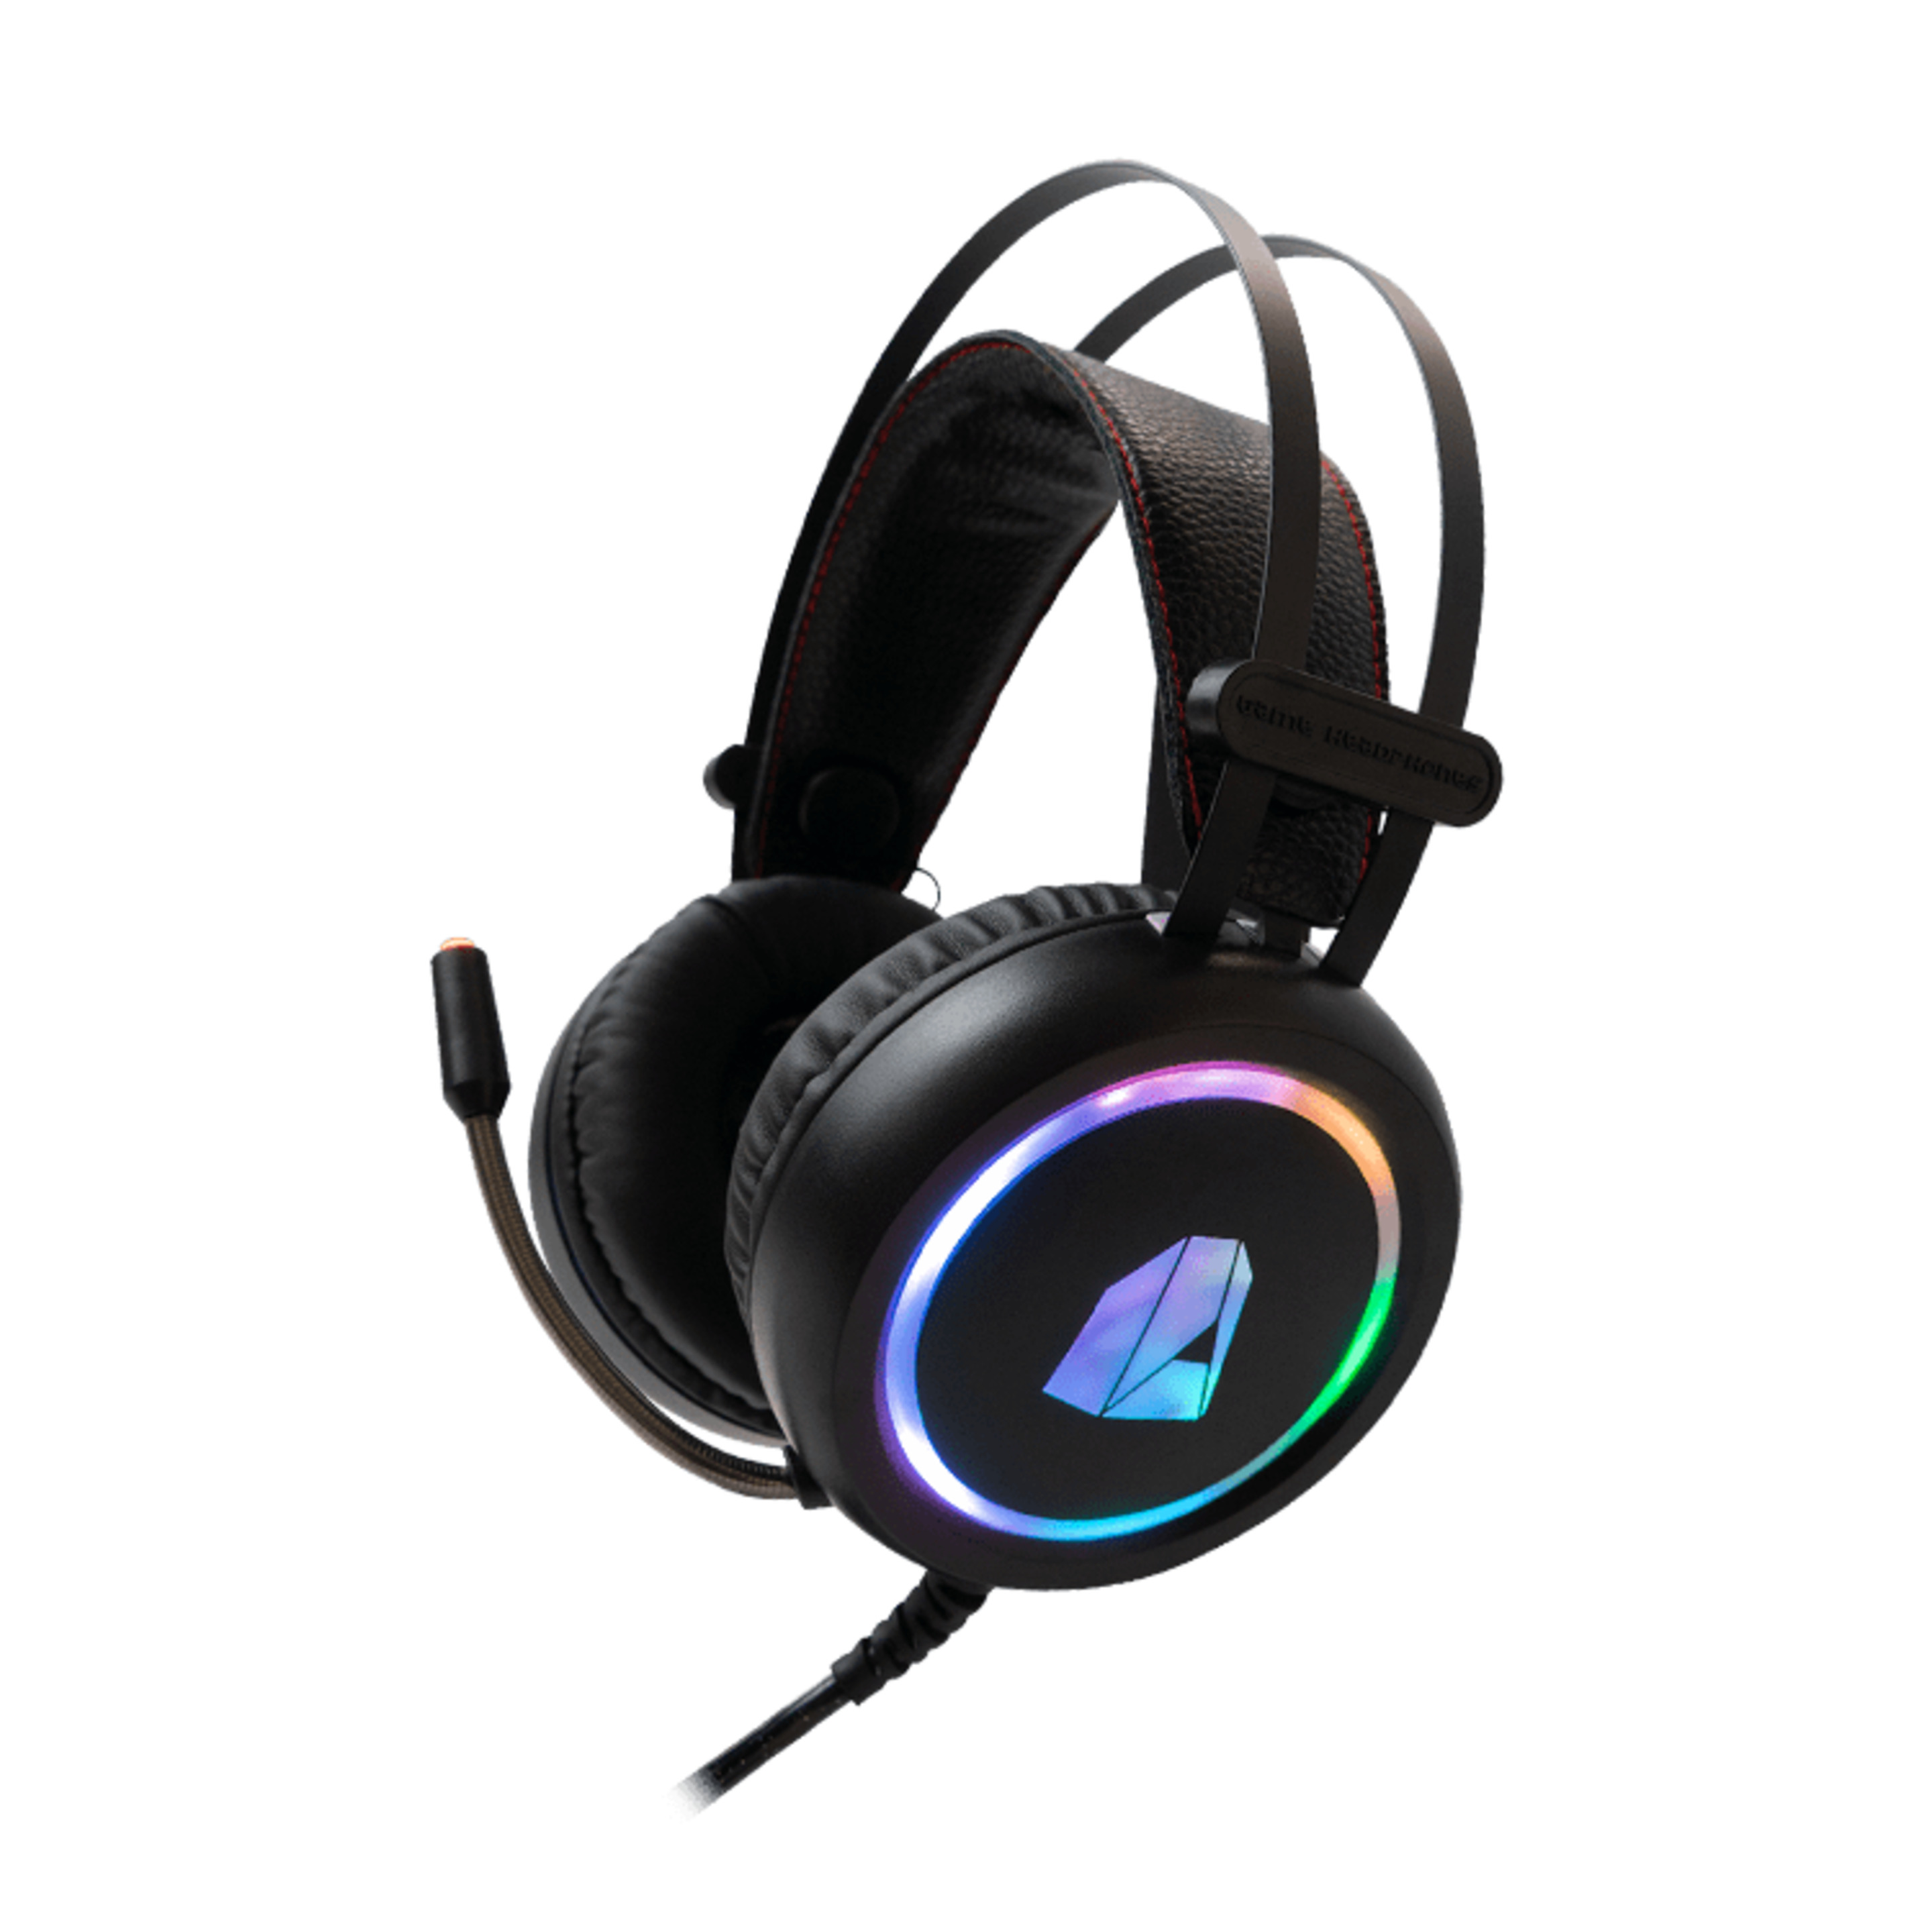 Headset Gaming Nitropc Nh10 Para Juegos Y Escuchar Música En Pc Con Iluminación Rgb Personalizable - Negro  MKP